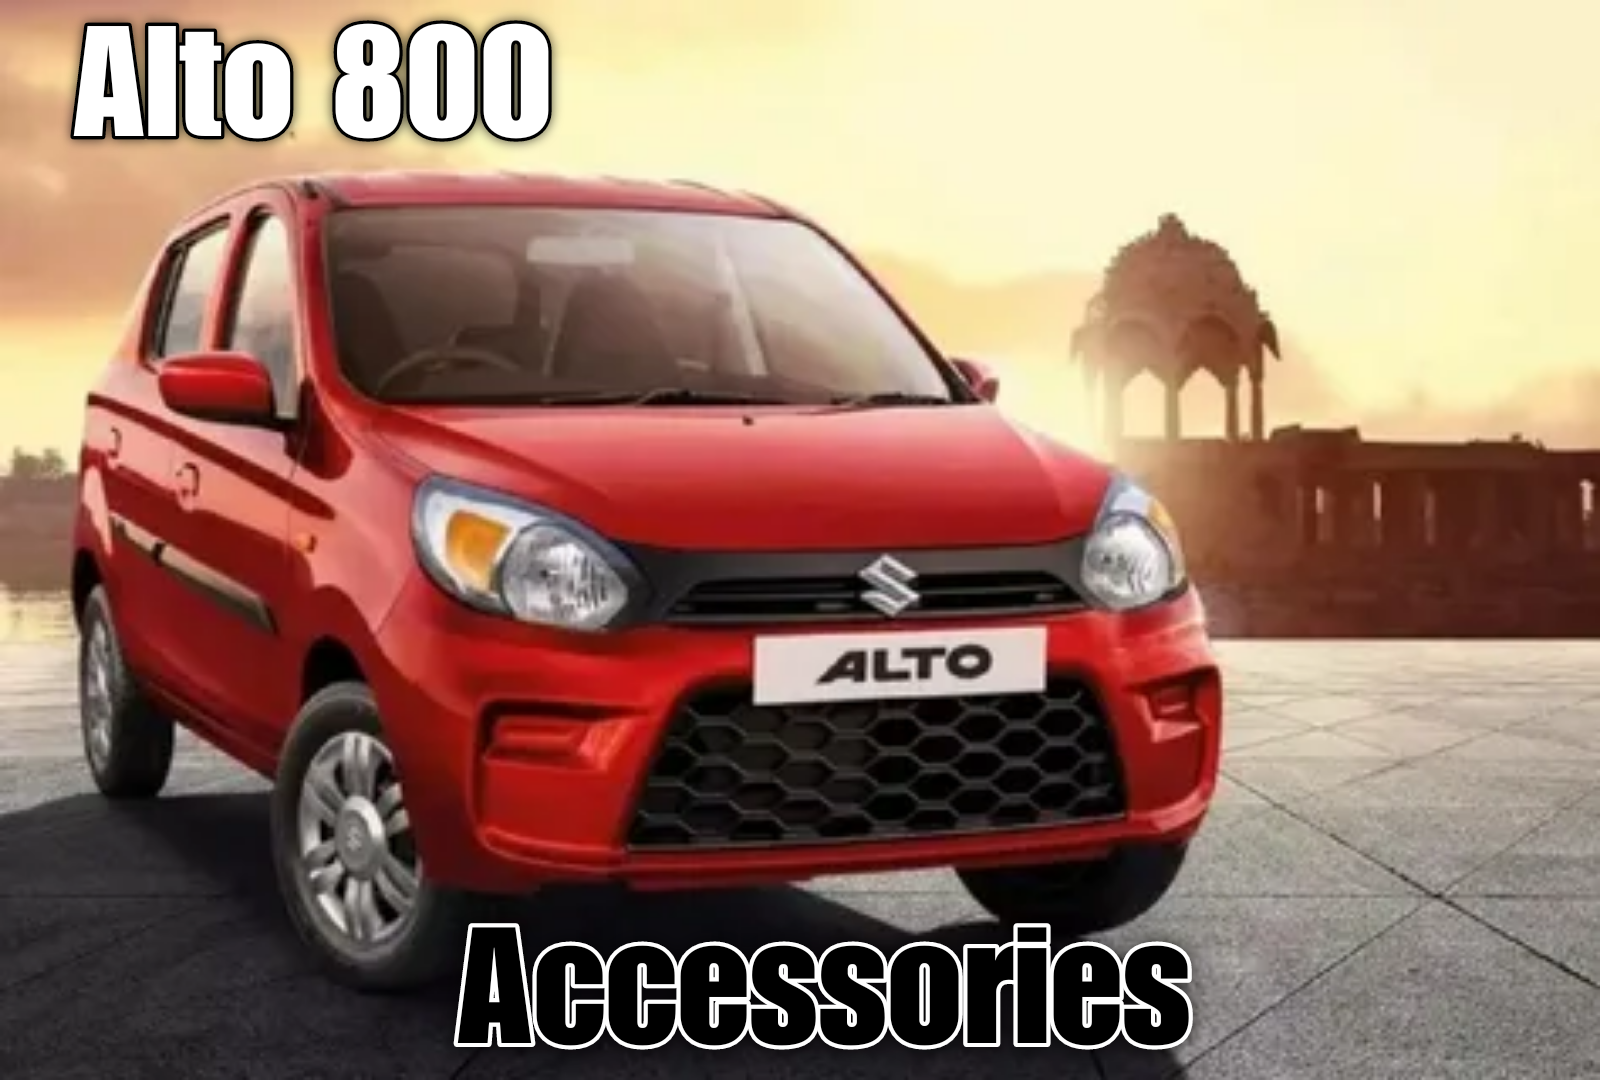 alto 800 accessories